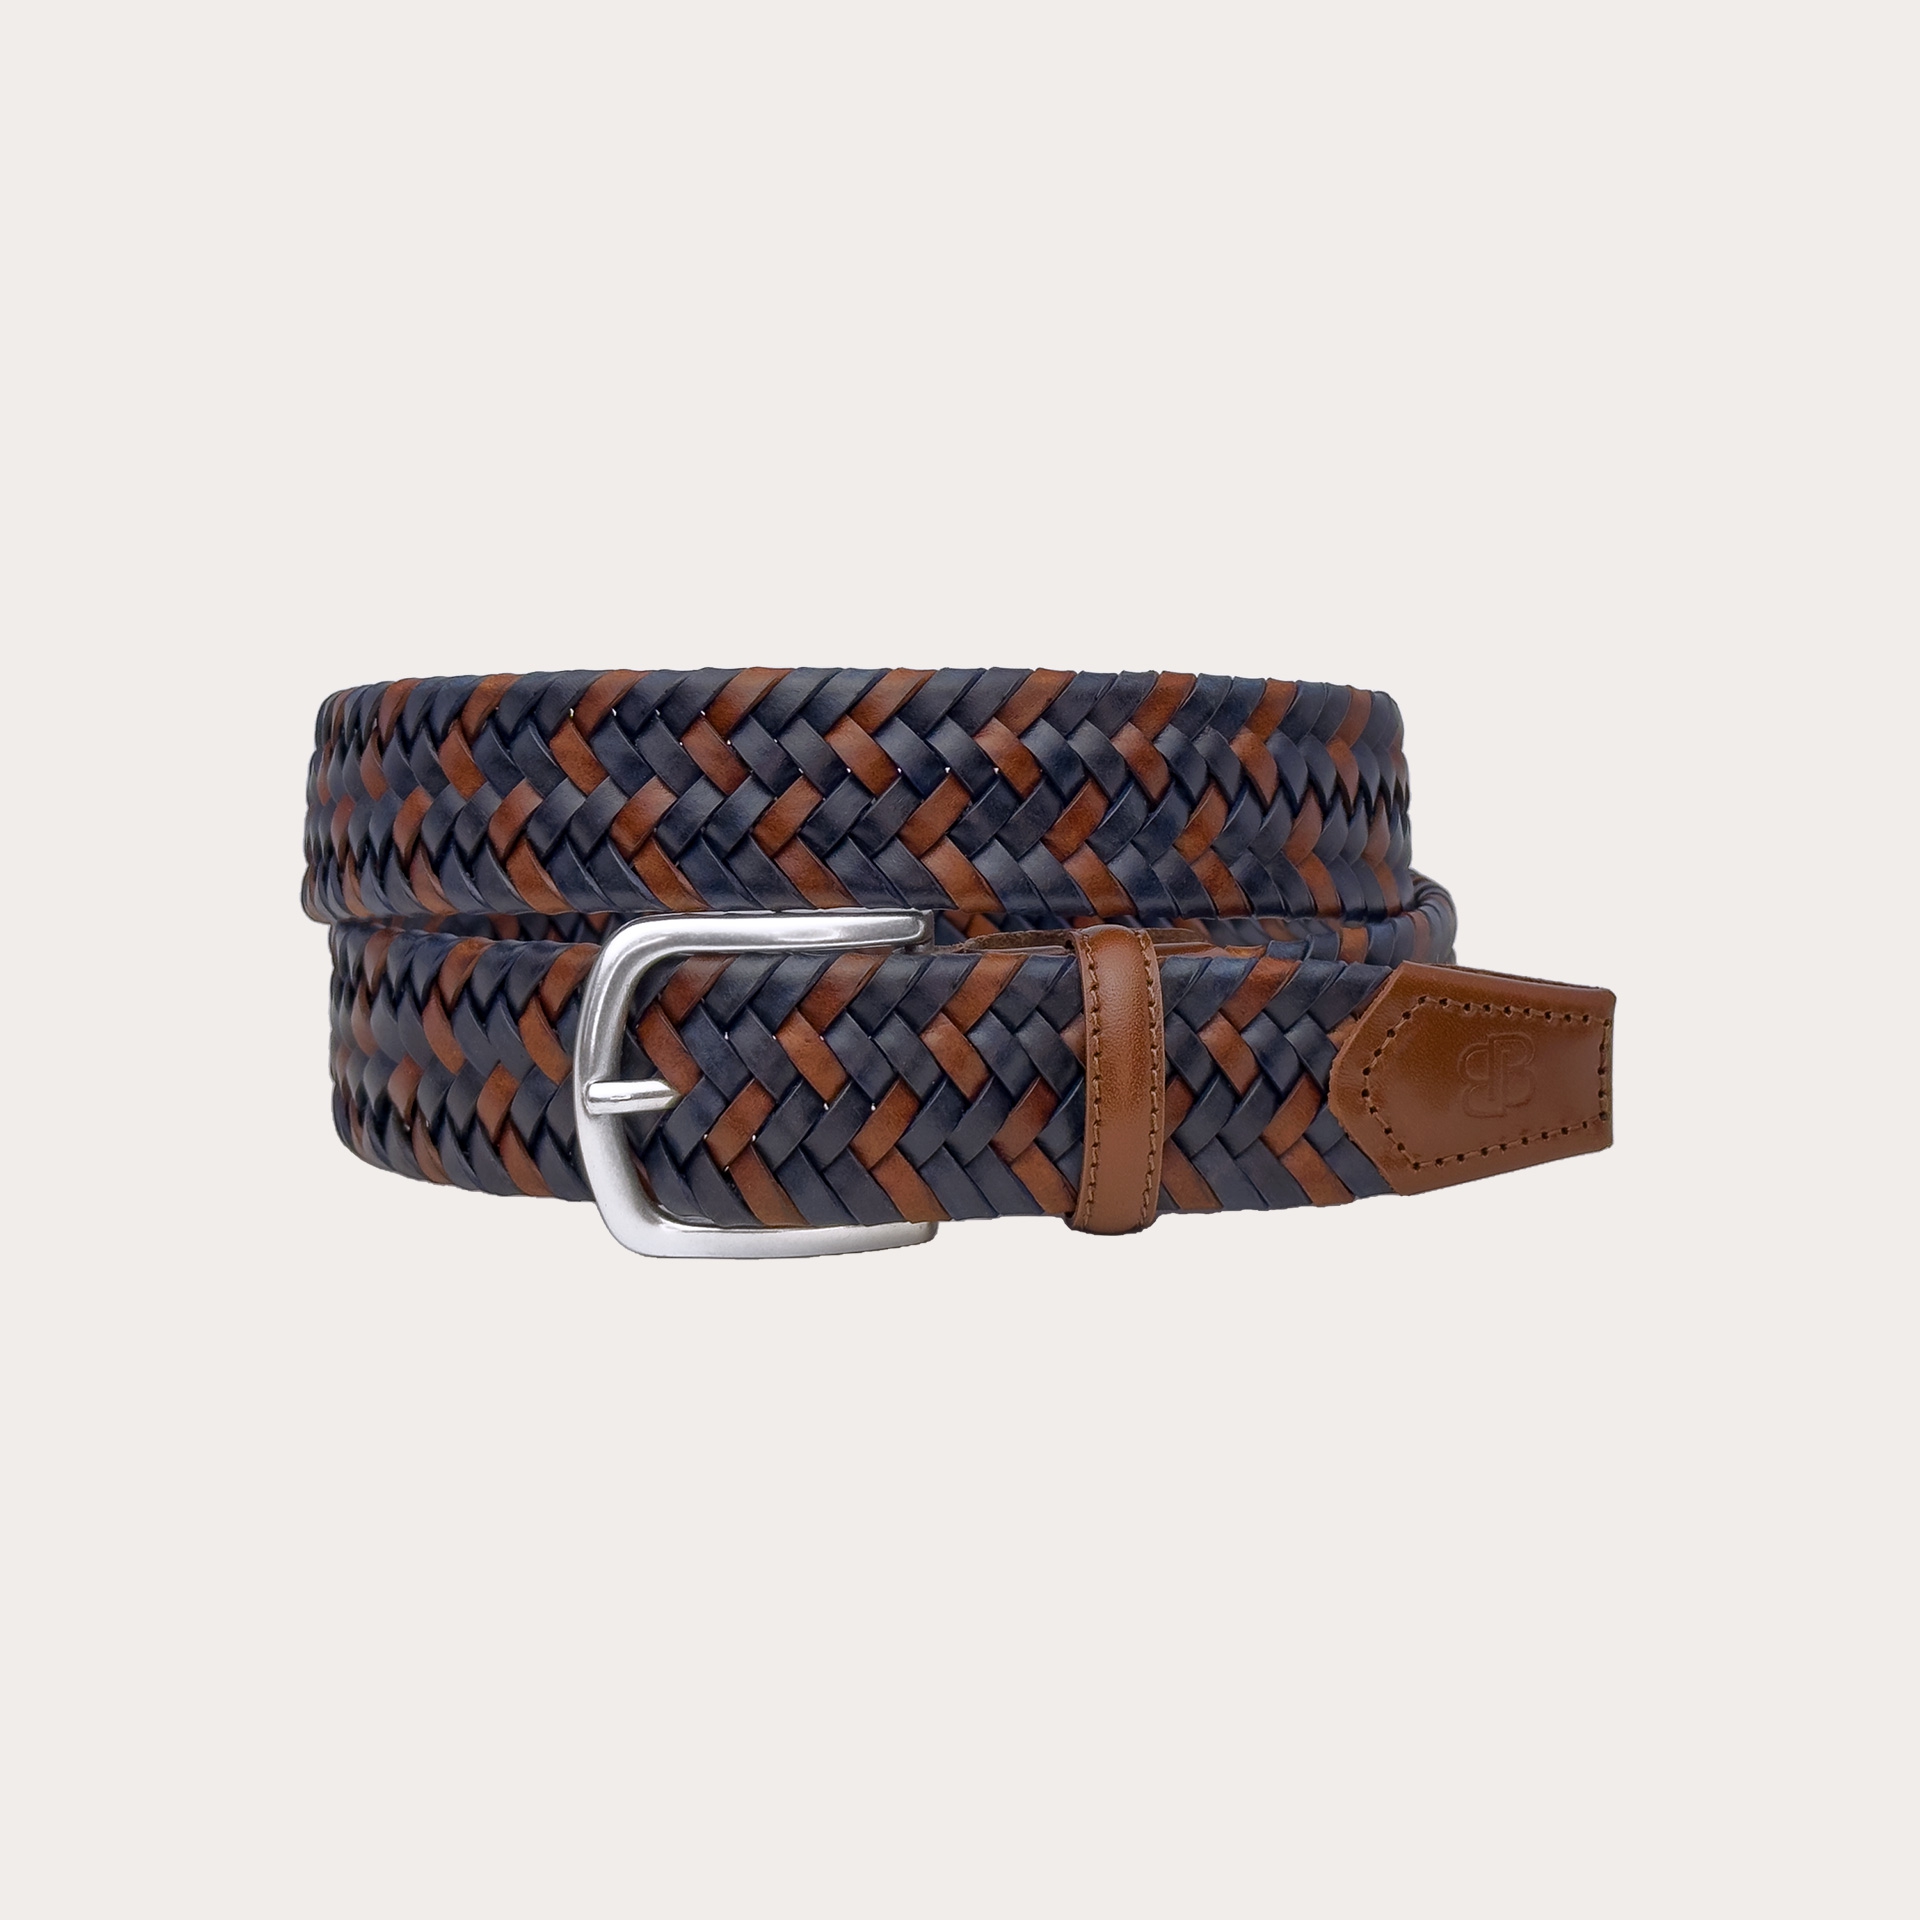 Cinturón de cuero trenzado, elástico, marrón y azul